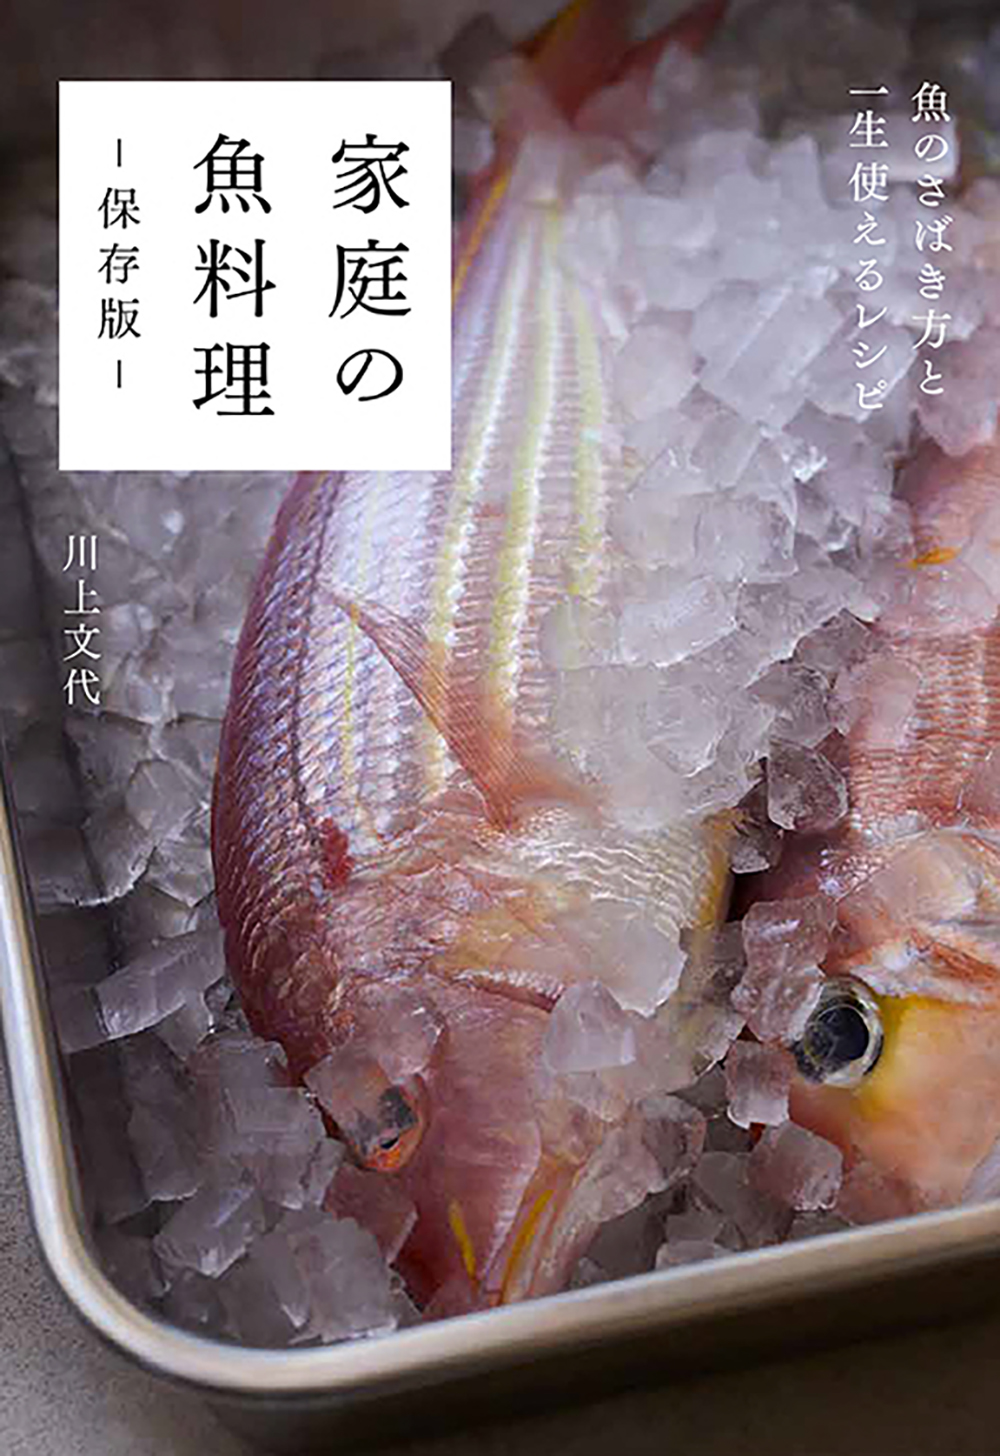 おいしい たのしい 経済的 108の魚レシピとさばき方で 魚料理が得意になる一冊 家庭の魚料理 保存版 8月発売 株式会社グラフィック社のプレスリリース